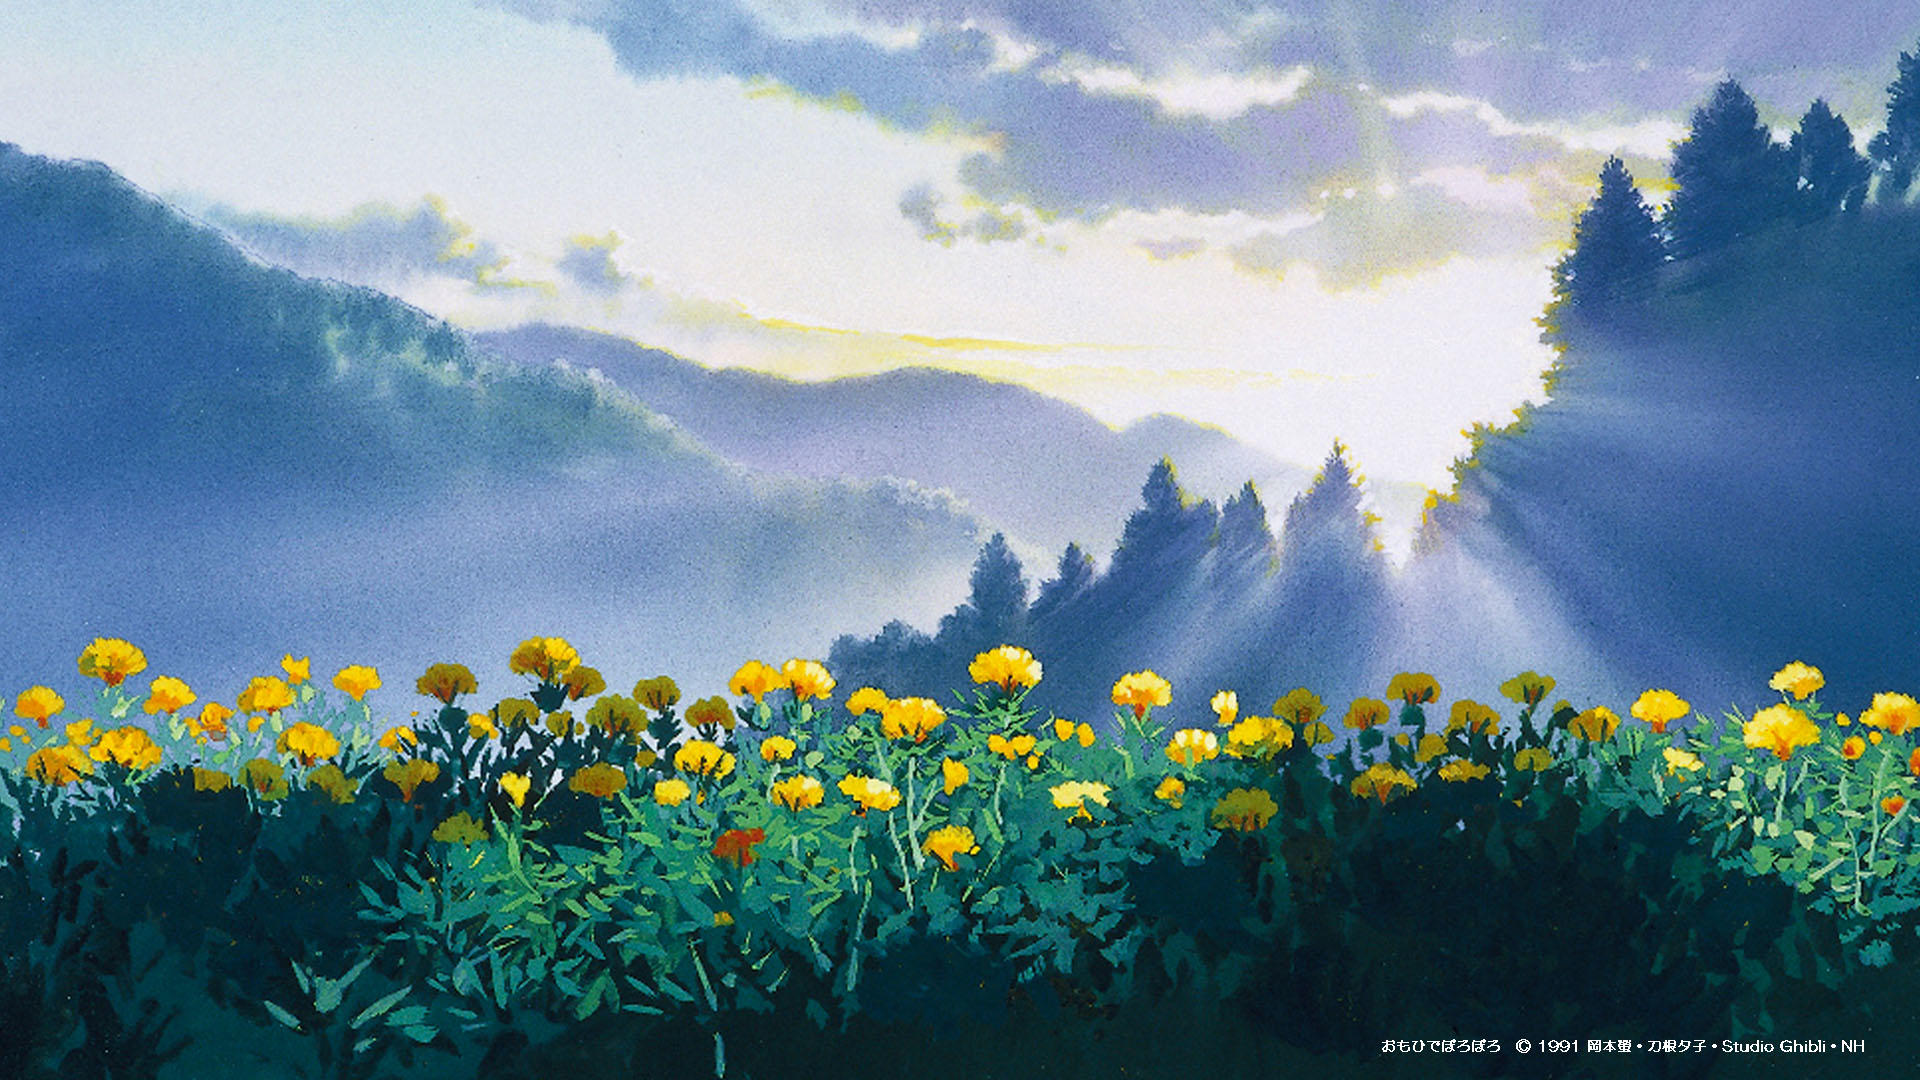 Ảnh nền Studio Ghibli rực rỡ sắc màu, lấy cảm hứng từ các bộ phim hoạt hình tâm đắc của Ghibli, sẽ đưa bạn vào thế giới nhân vật đáng yêu và cảnh quan đẹp như truyện tranh. Đặt lá hẹn cùng những chú Totoro, chiếc áo gió bay và những thần tiên bé nhỏ ngay lập tức.